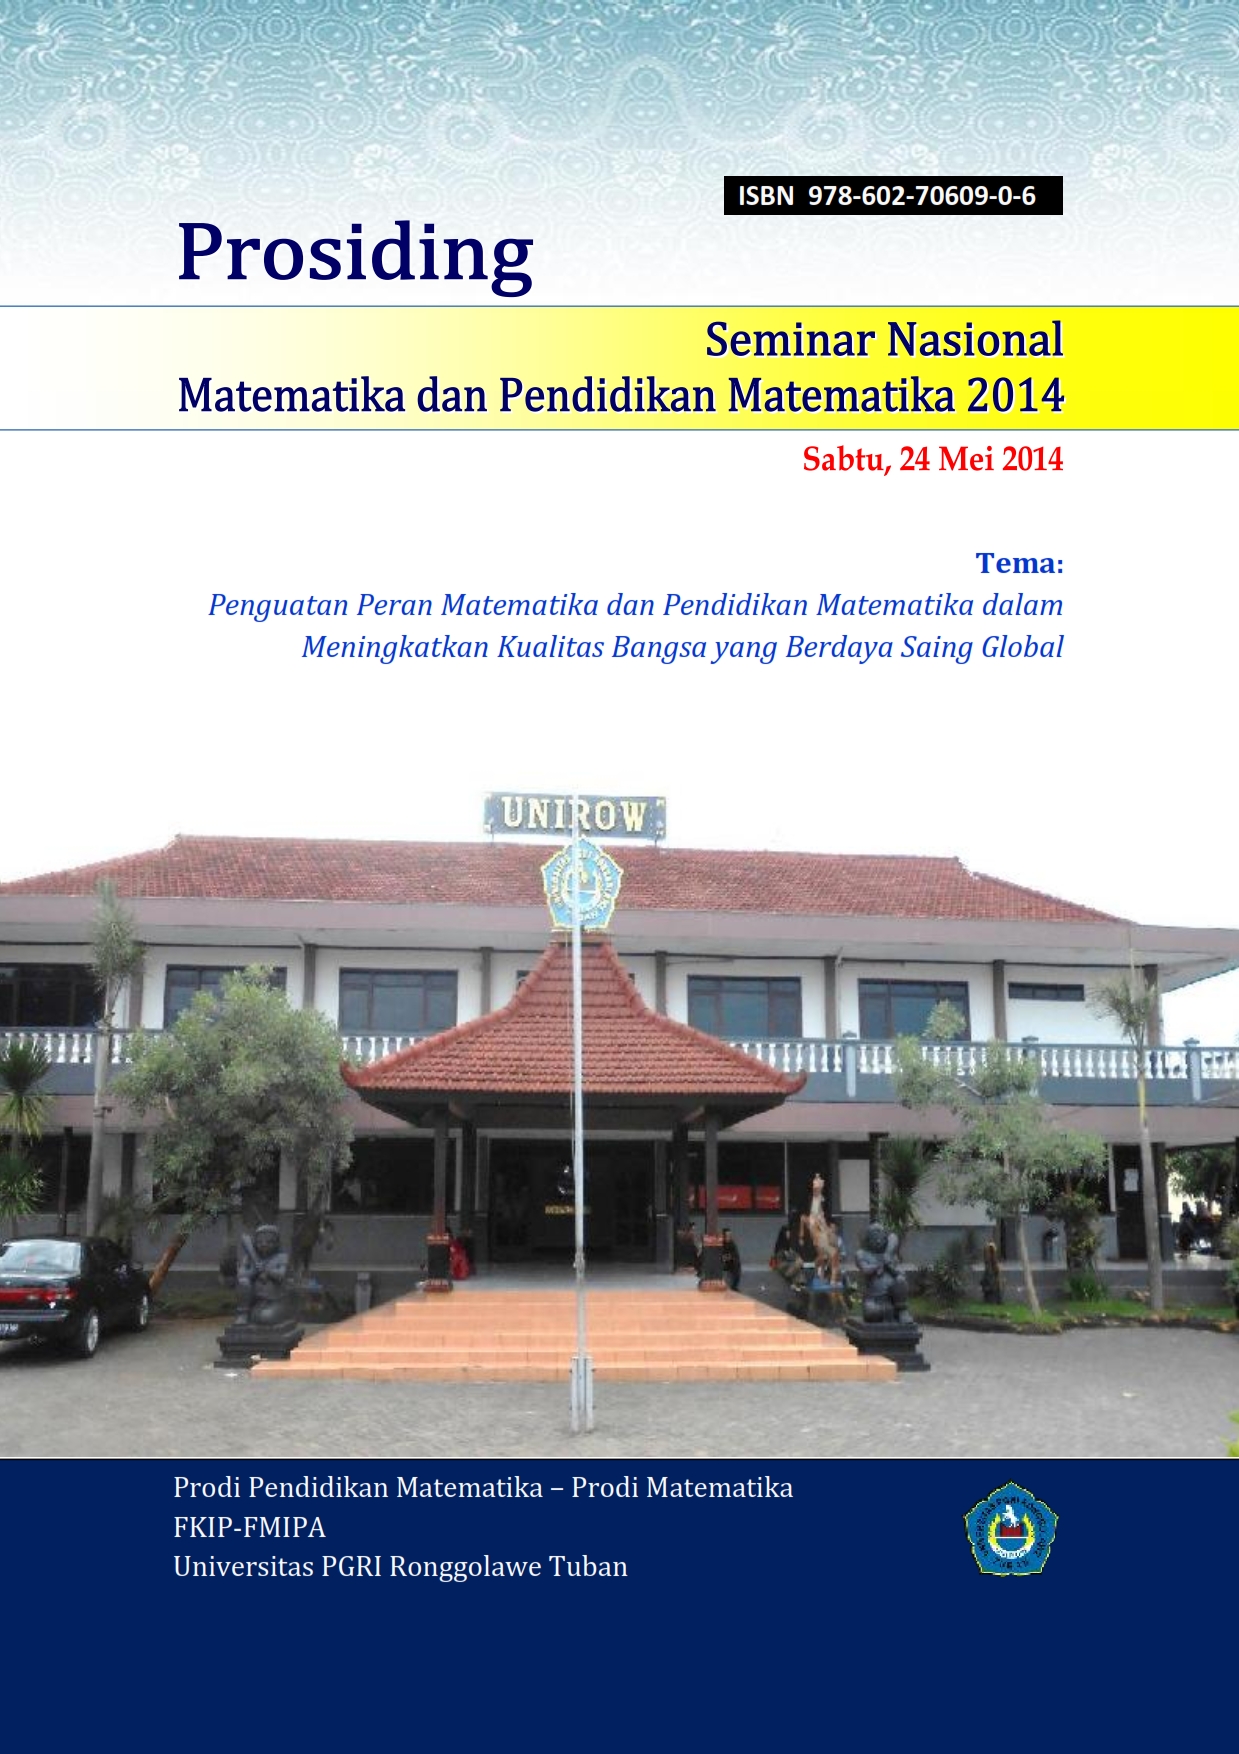 					View Vol. 5 No. 1 (2014): Prosiding Seminar Nasional Matematika dan Pendidikan Matematika 2014
				